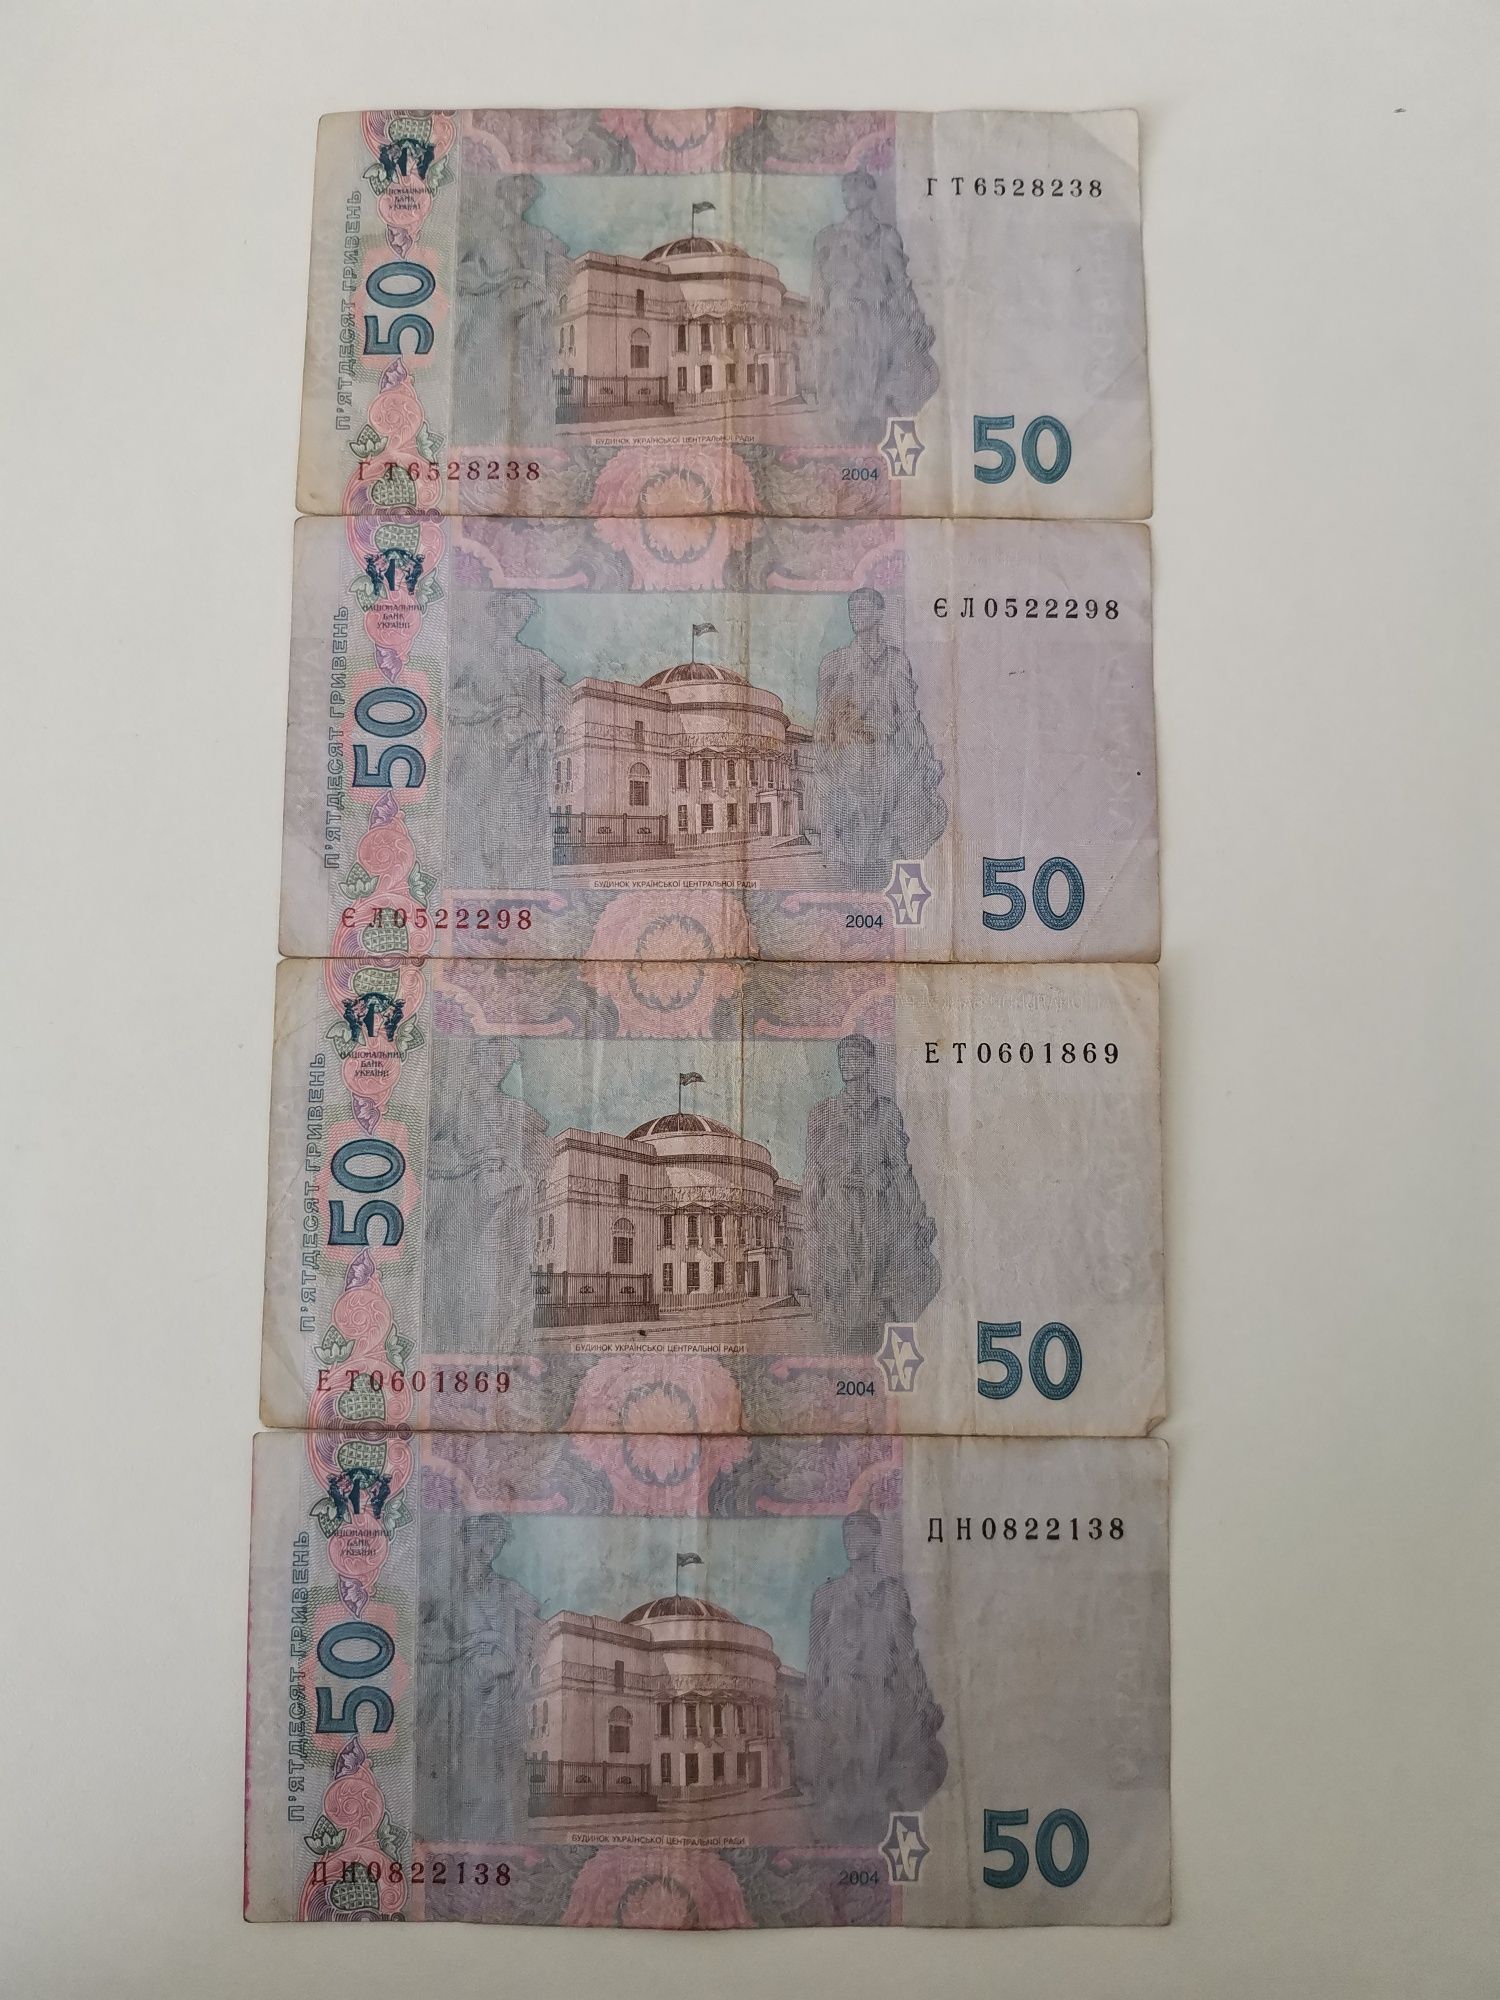 50-гривнева купюра 2004 року